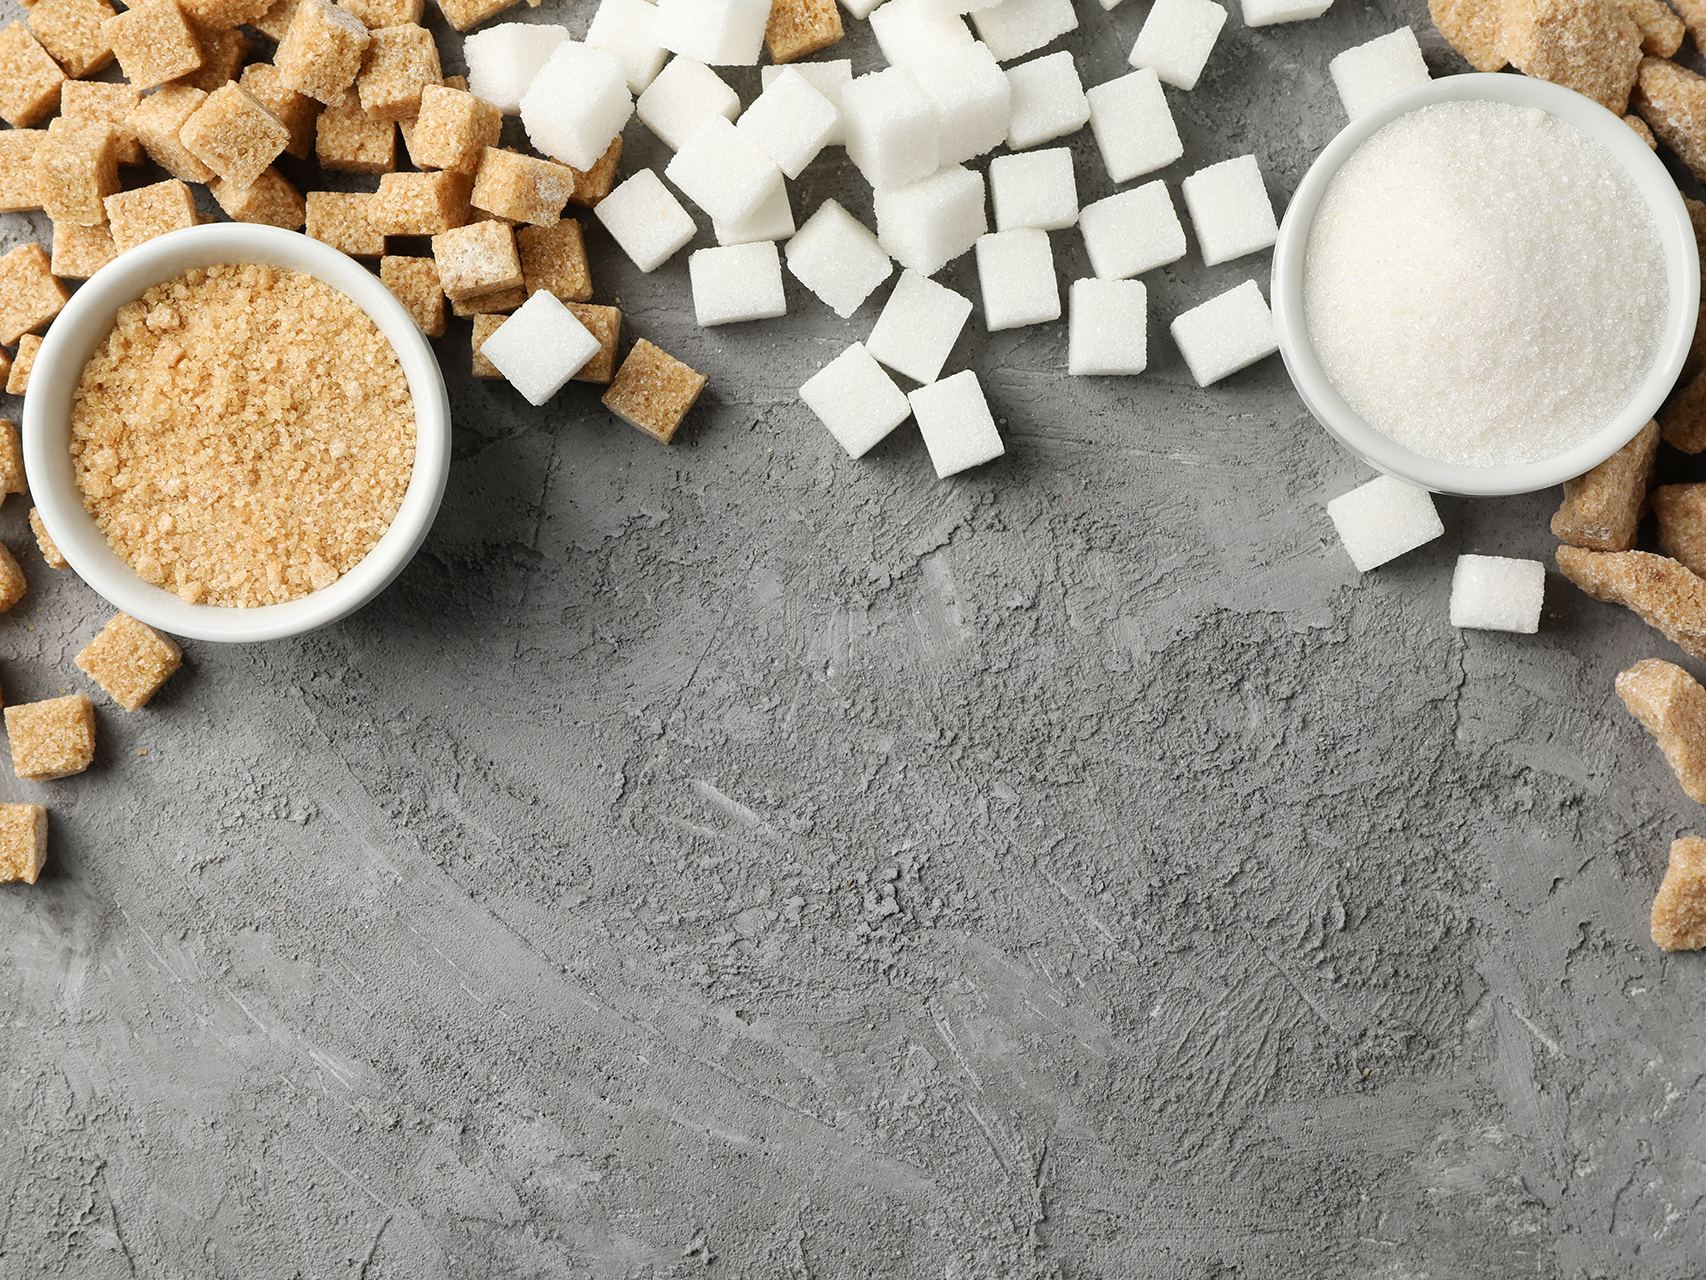 Ζάχαρη: Οι τιμές αυξήθηκαν κατά 61% στην ΕΕ σε διάστημα ενός έτους